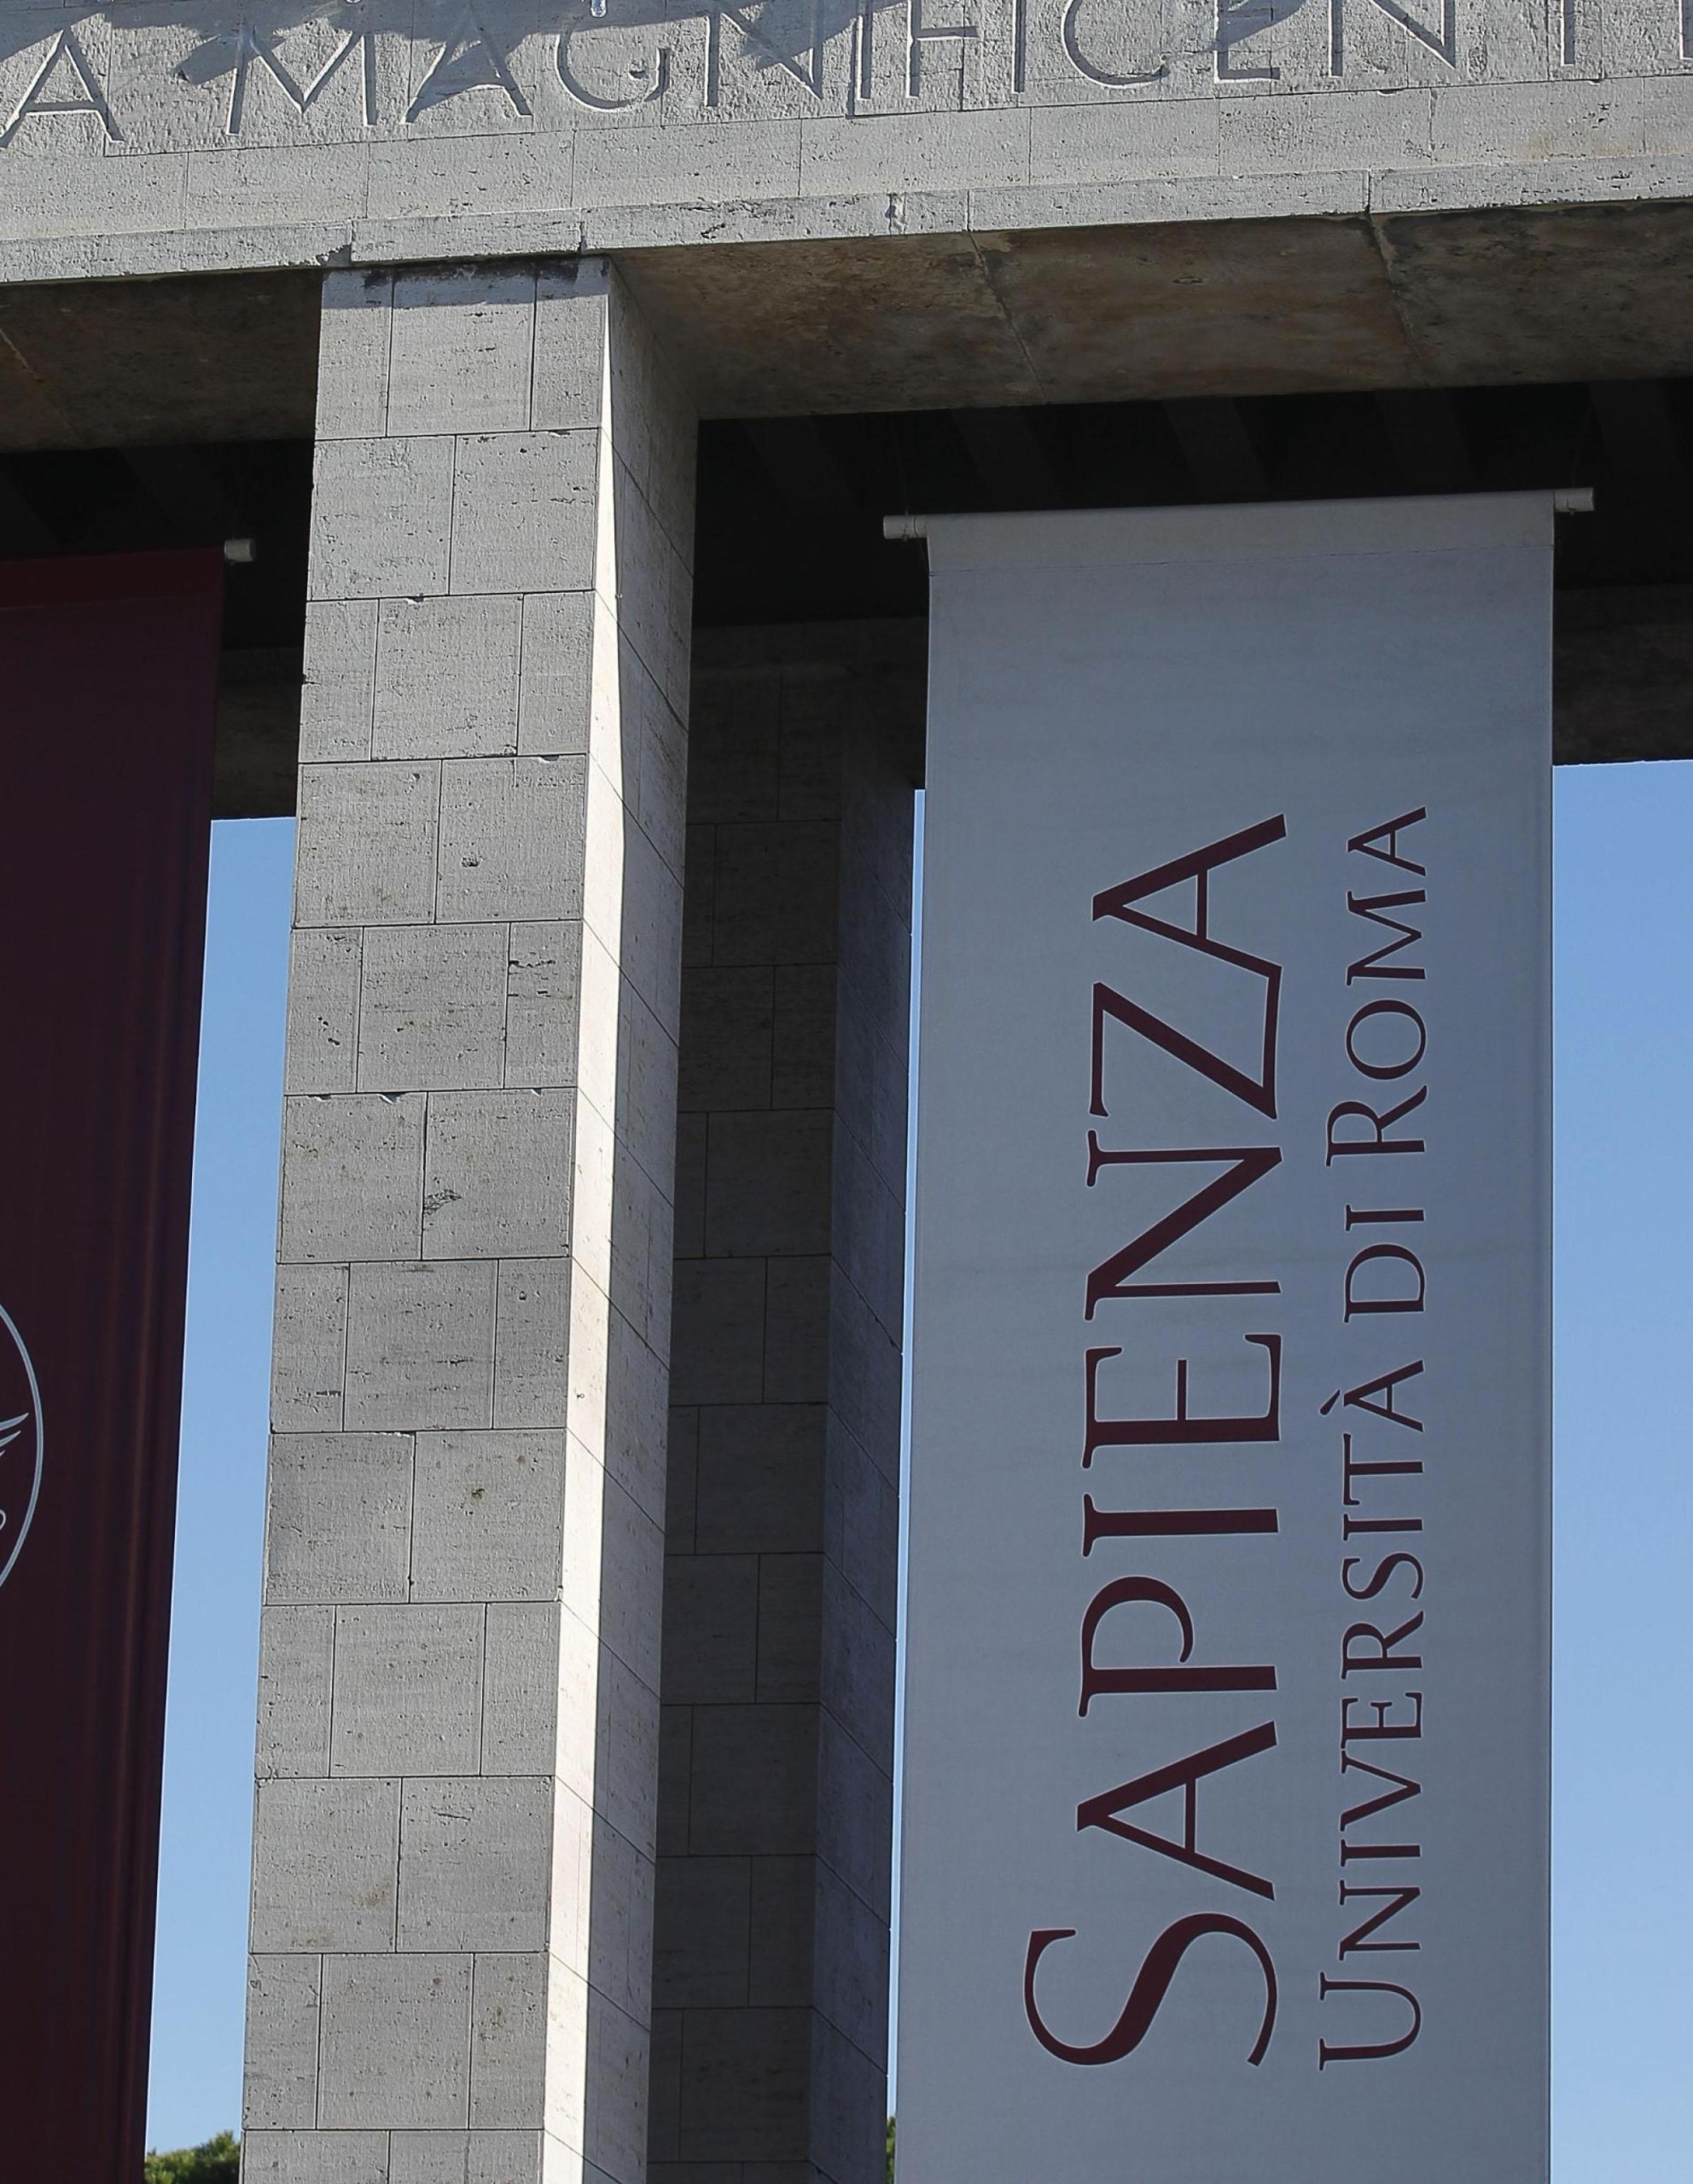 L'ingresso dell'Universita'  La Sapienza , Roma 6 dicembre 2012.
ANSA/ALESSANDRO DI MEO